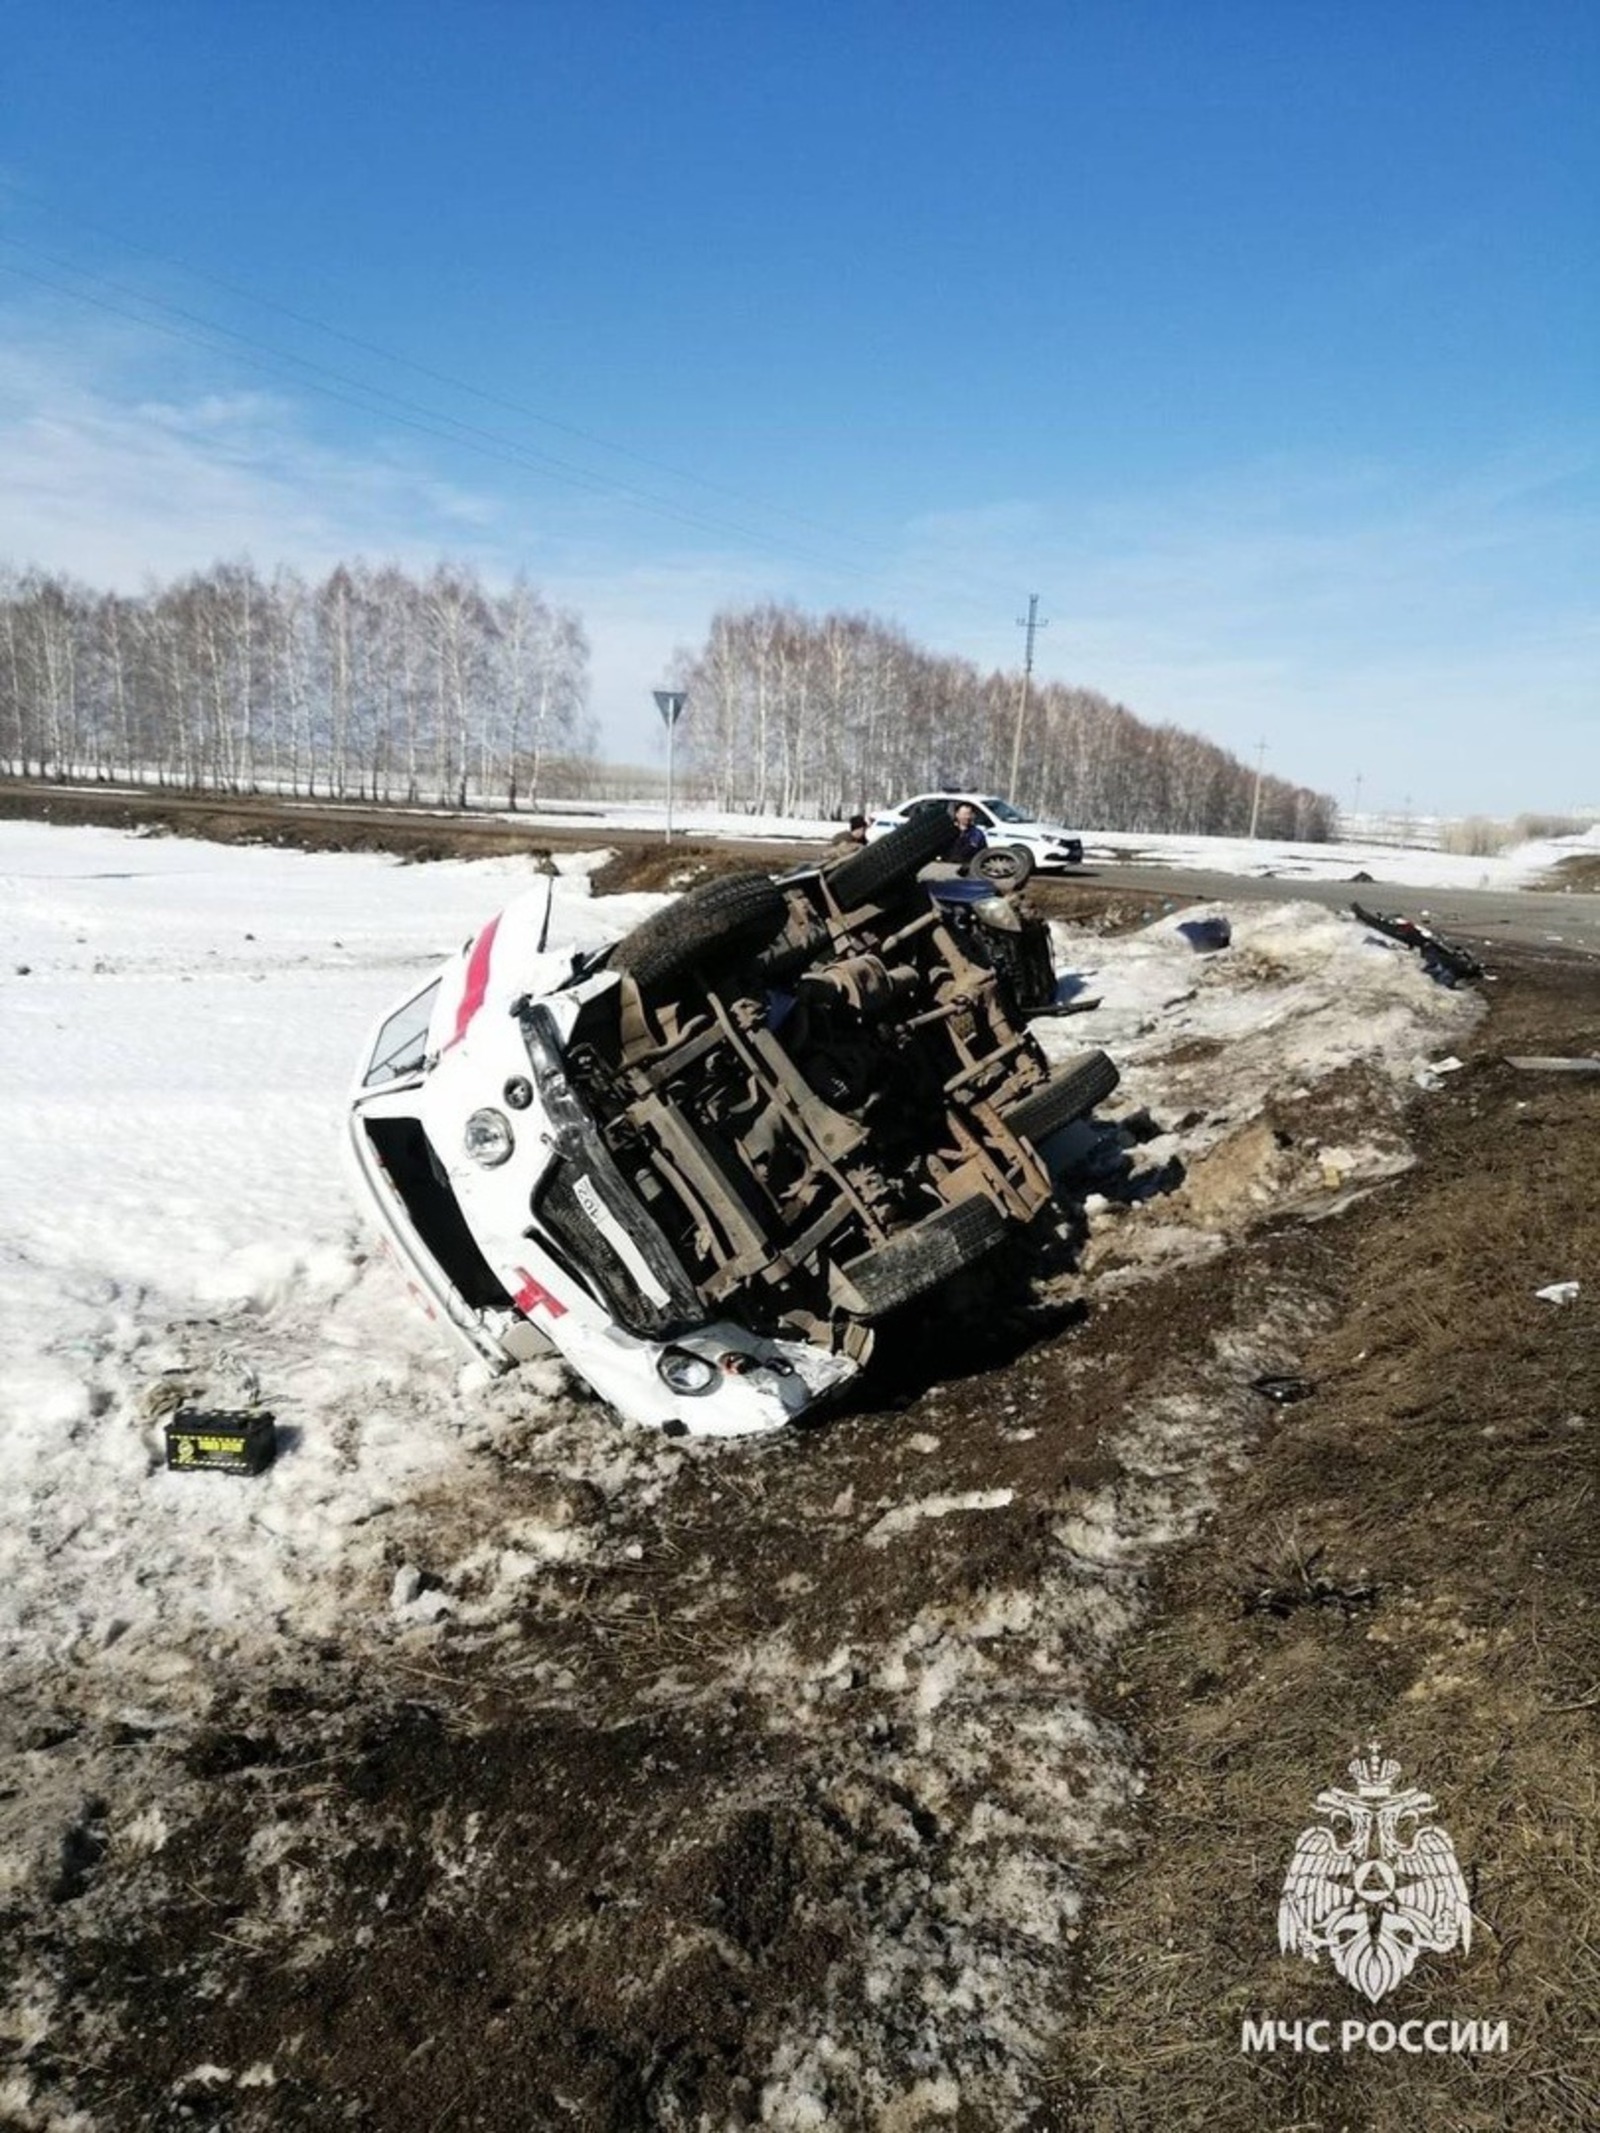 Водитель в коме: в Башкирии стали известны подробности аварии с участием скорой помощи